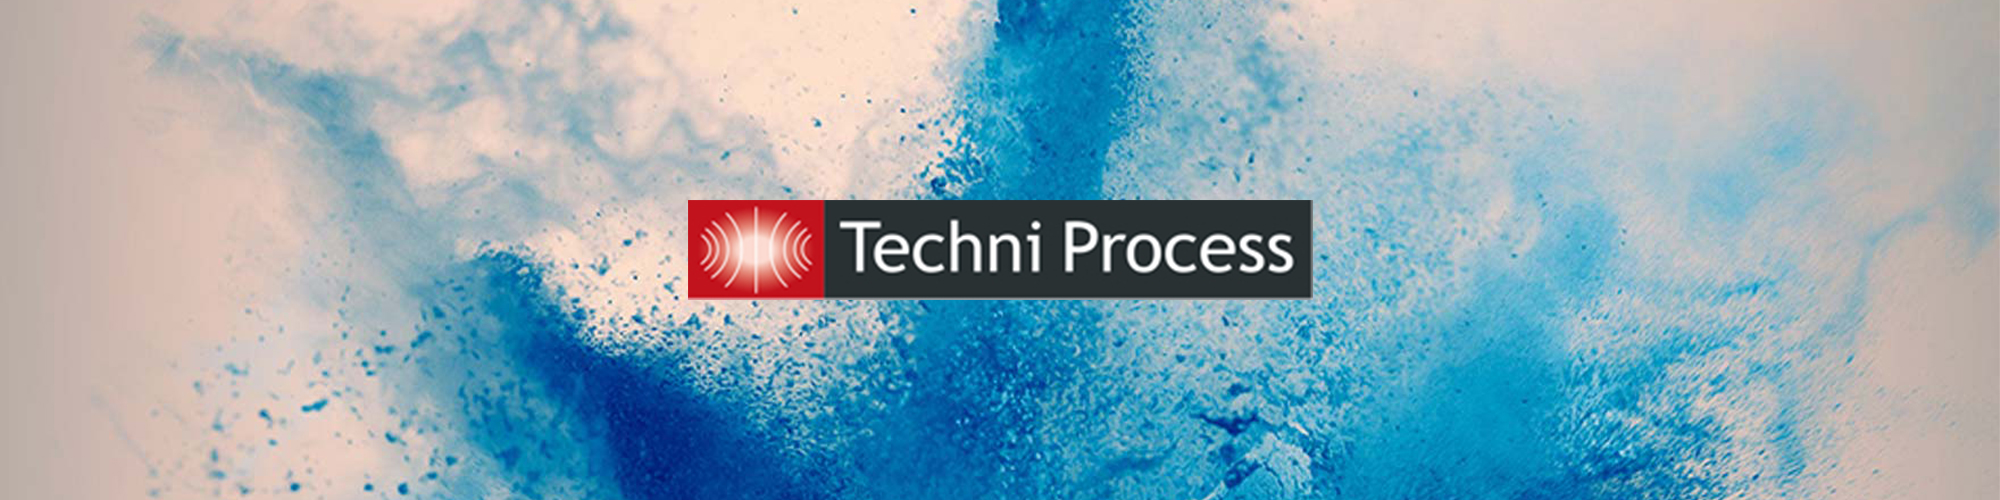 Techni Process